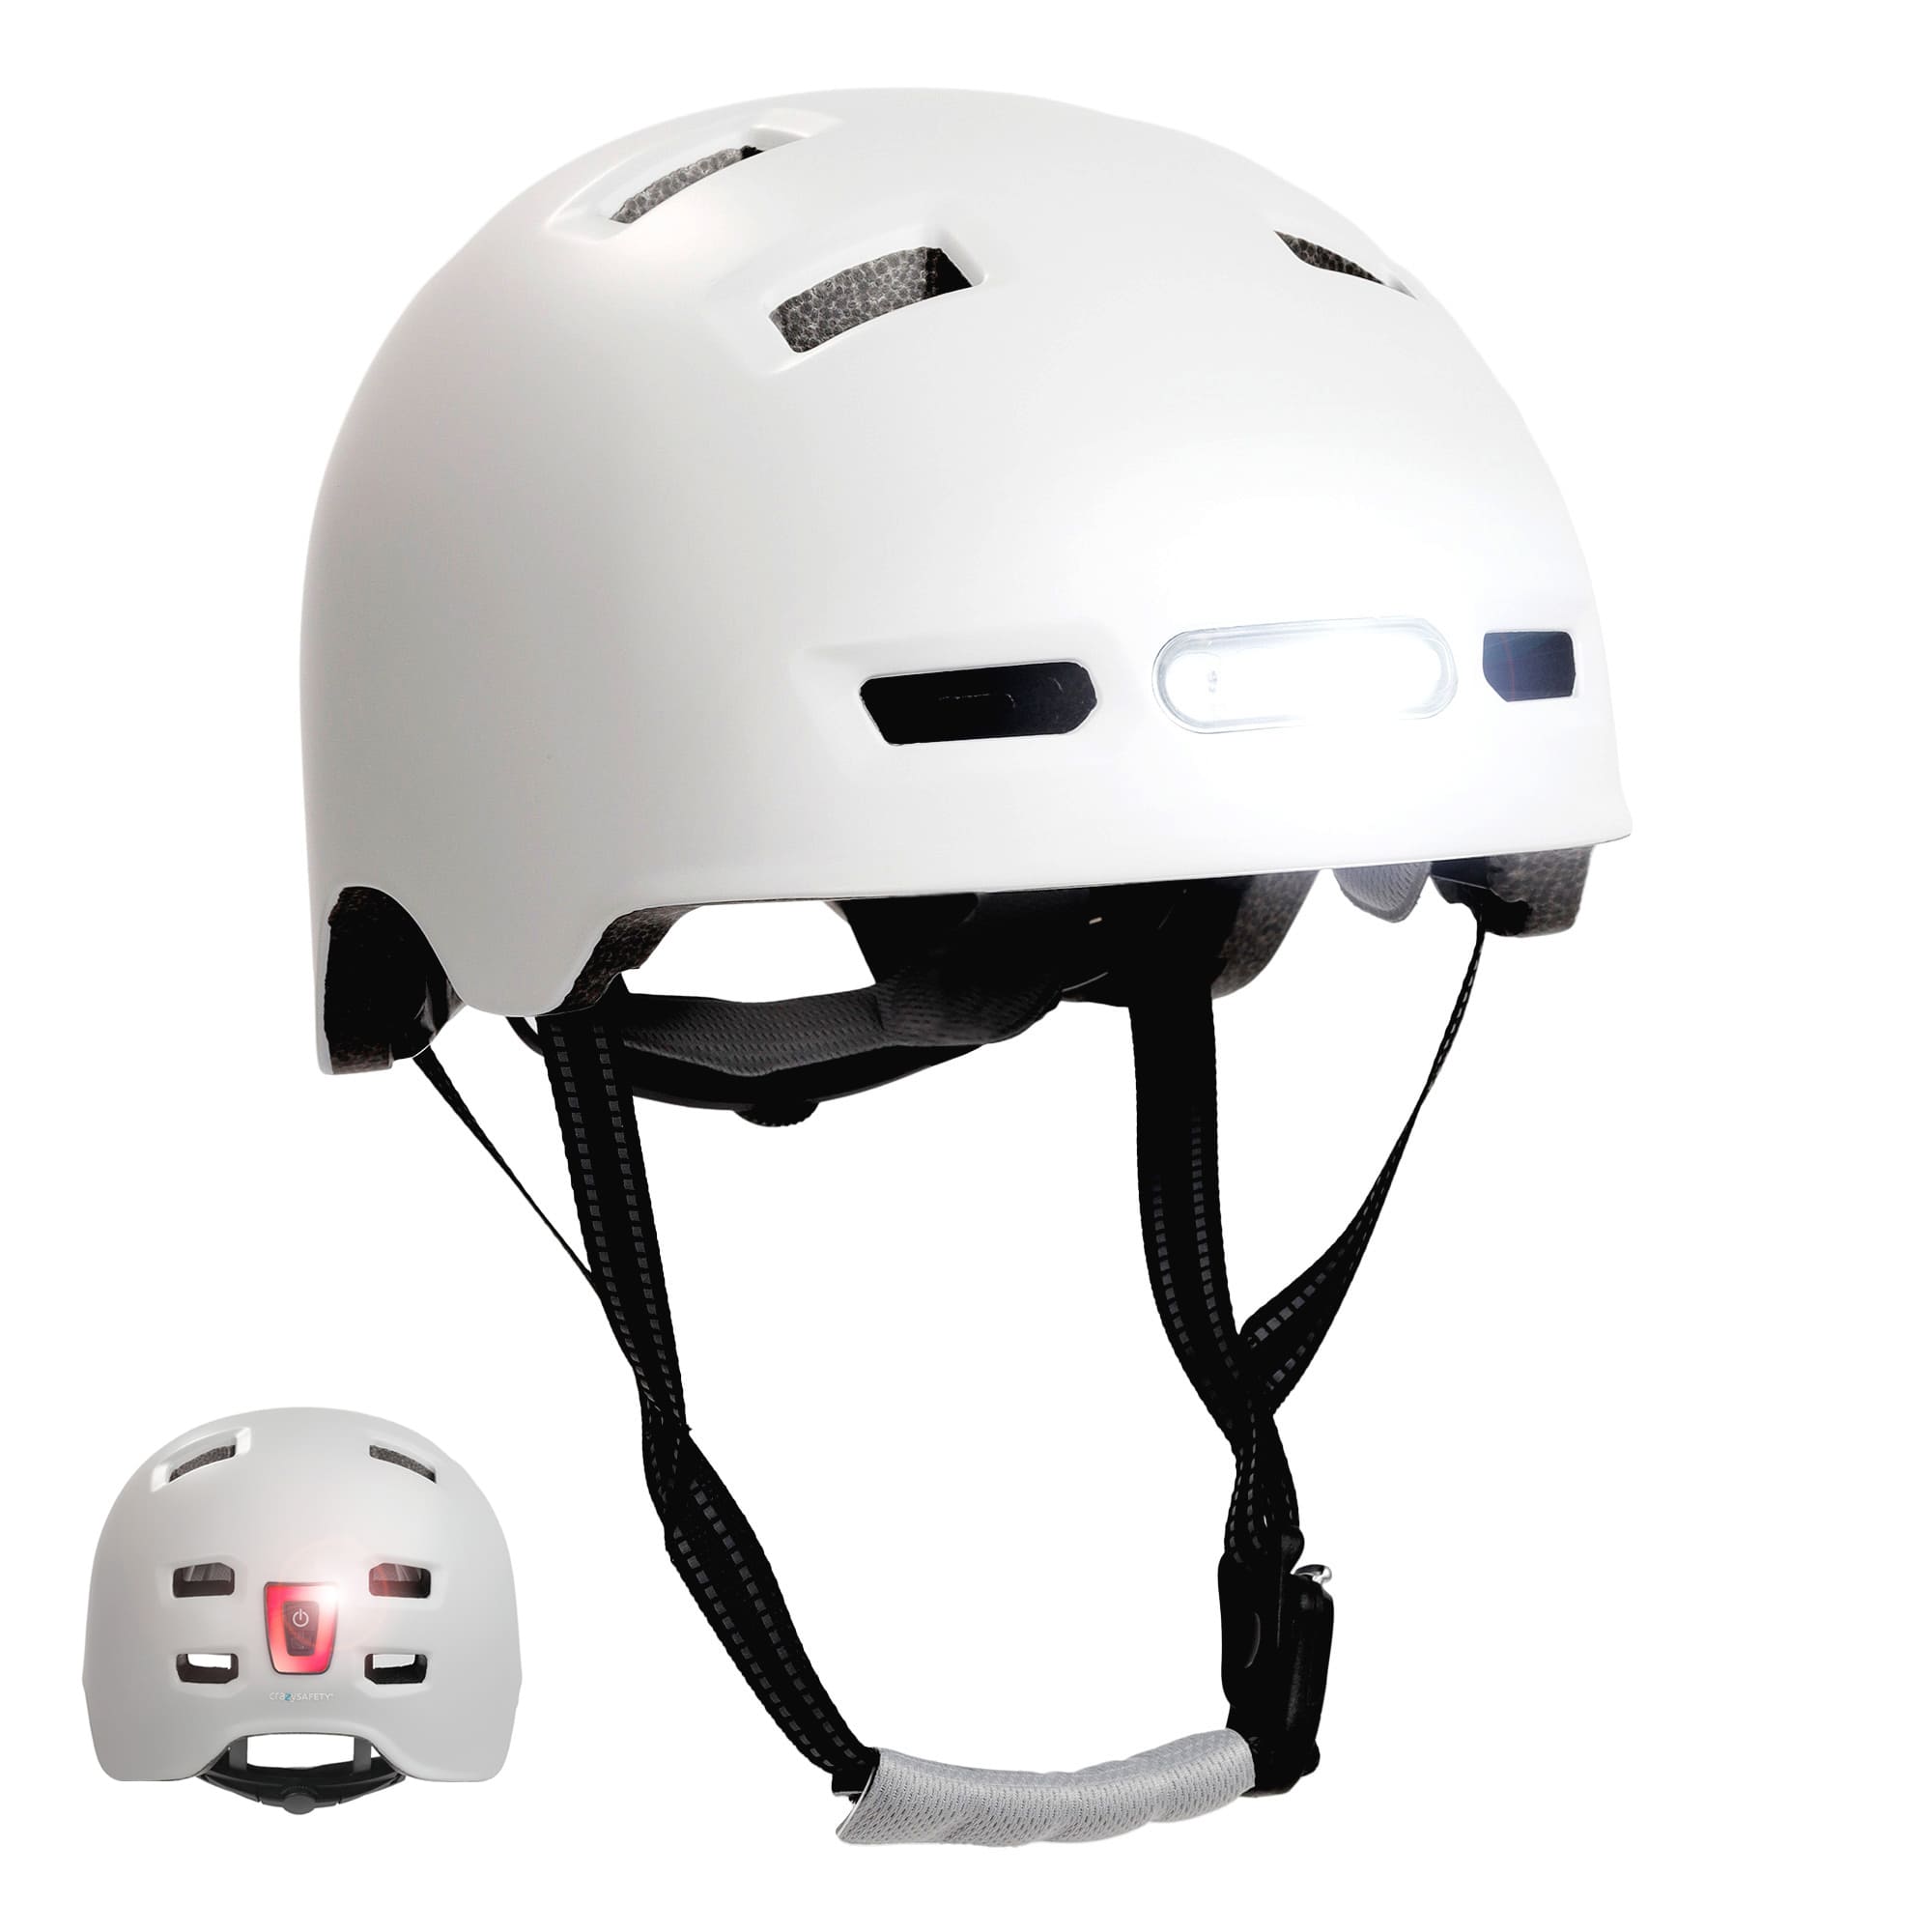 Billede af Mat hvid urban cykel- og skaterhjelm, størrelse M 54-57cm, til teenagere og voksne, Crazy Safety-hjelm med kraftig for- og baglygter. Godkendt og EN1078-certificeret.